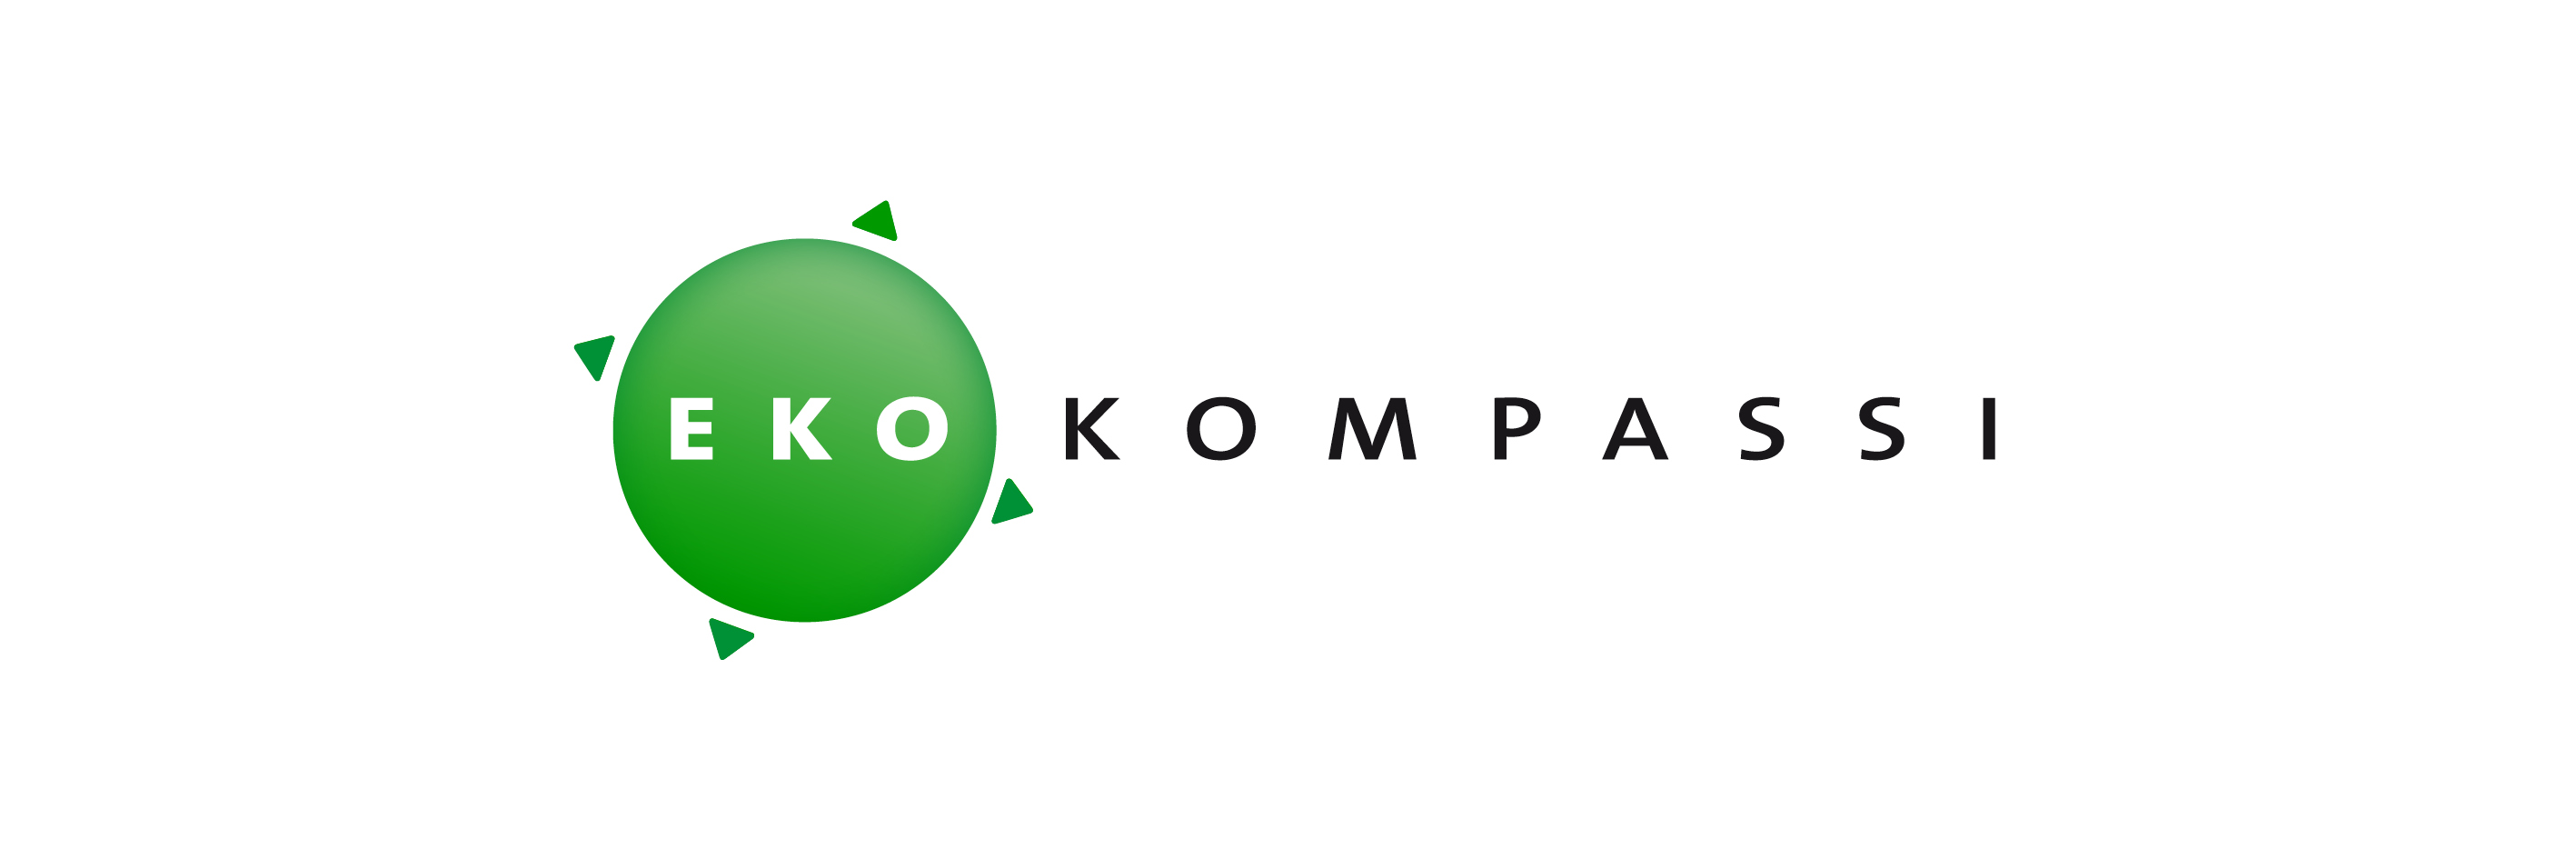 Ekokompassi logo.